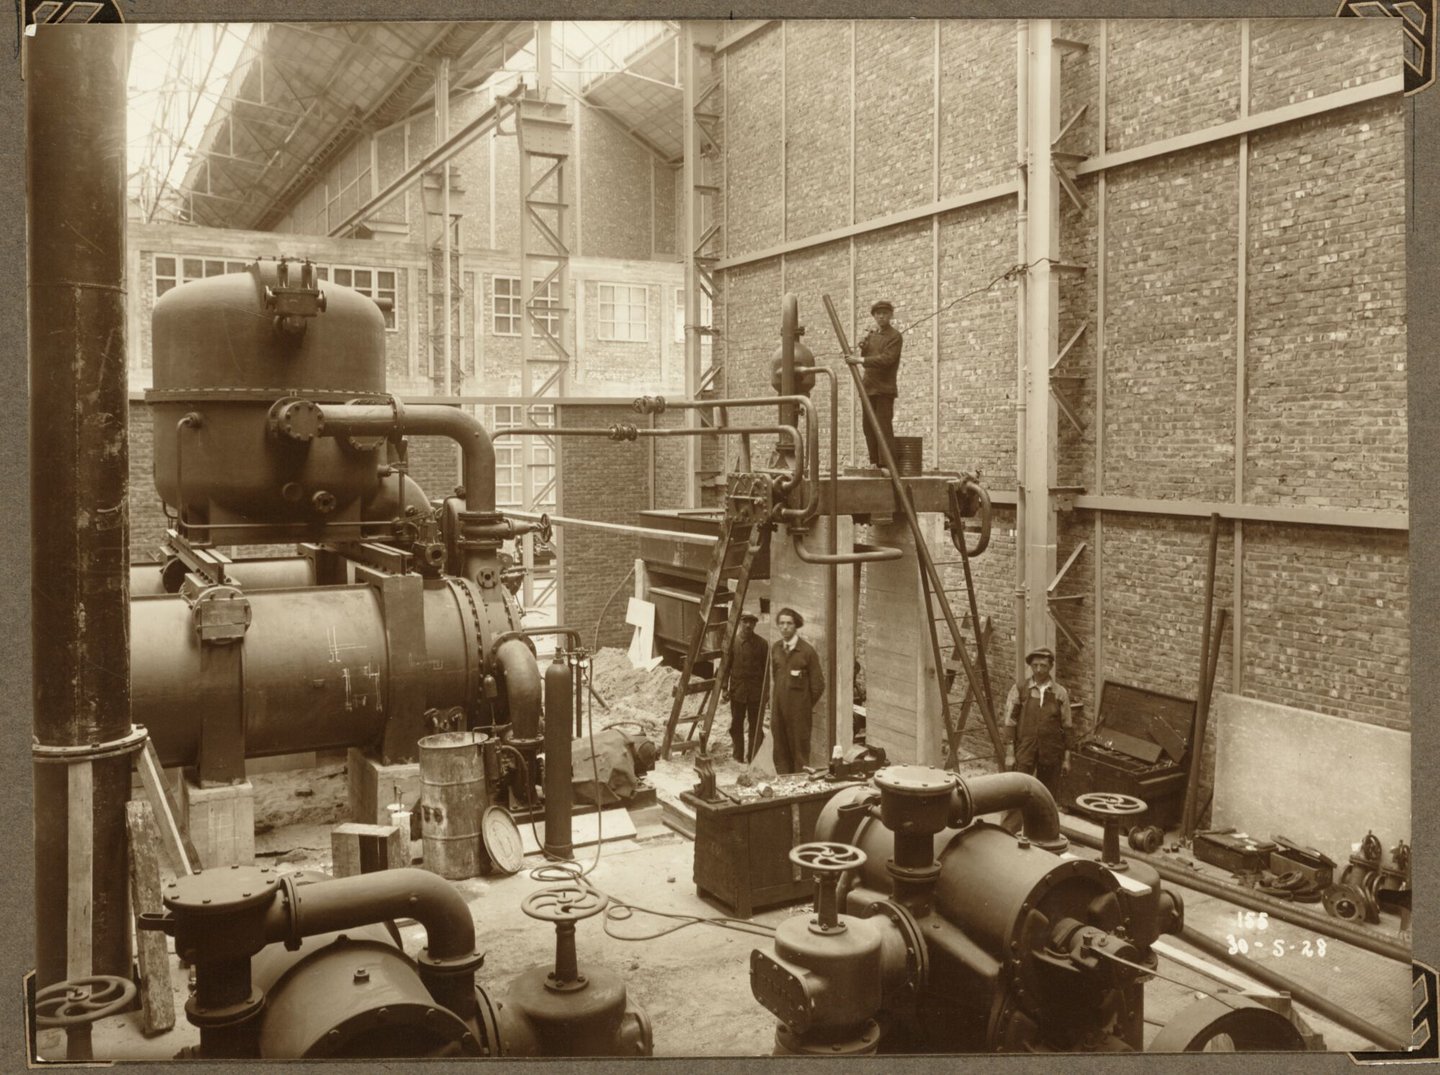 Bouw van S.C.A.M.-zaal van ammoniakfabriek van cokesfabriek Kuhlmann in Zelzate